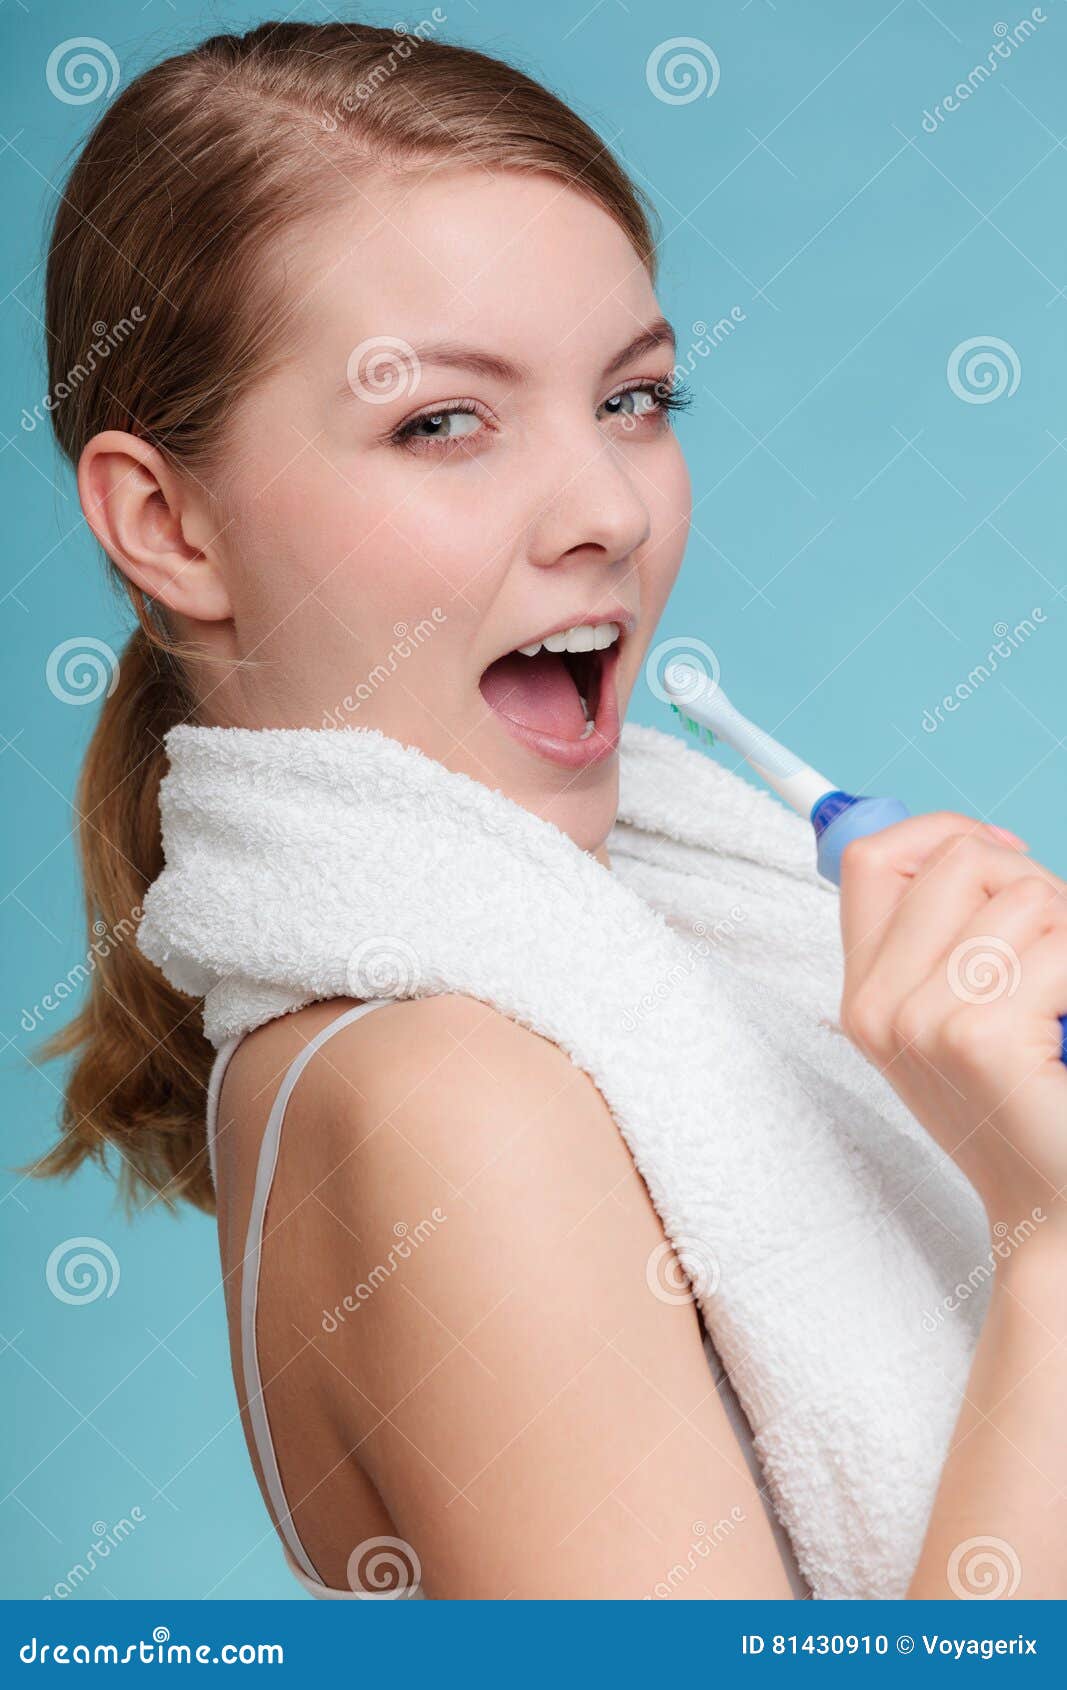 Girl Singing Using Toothbrush Stock